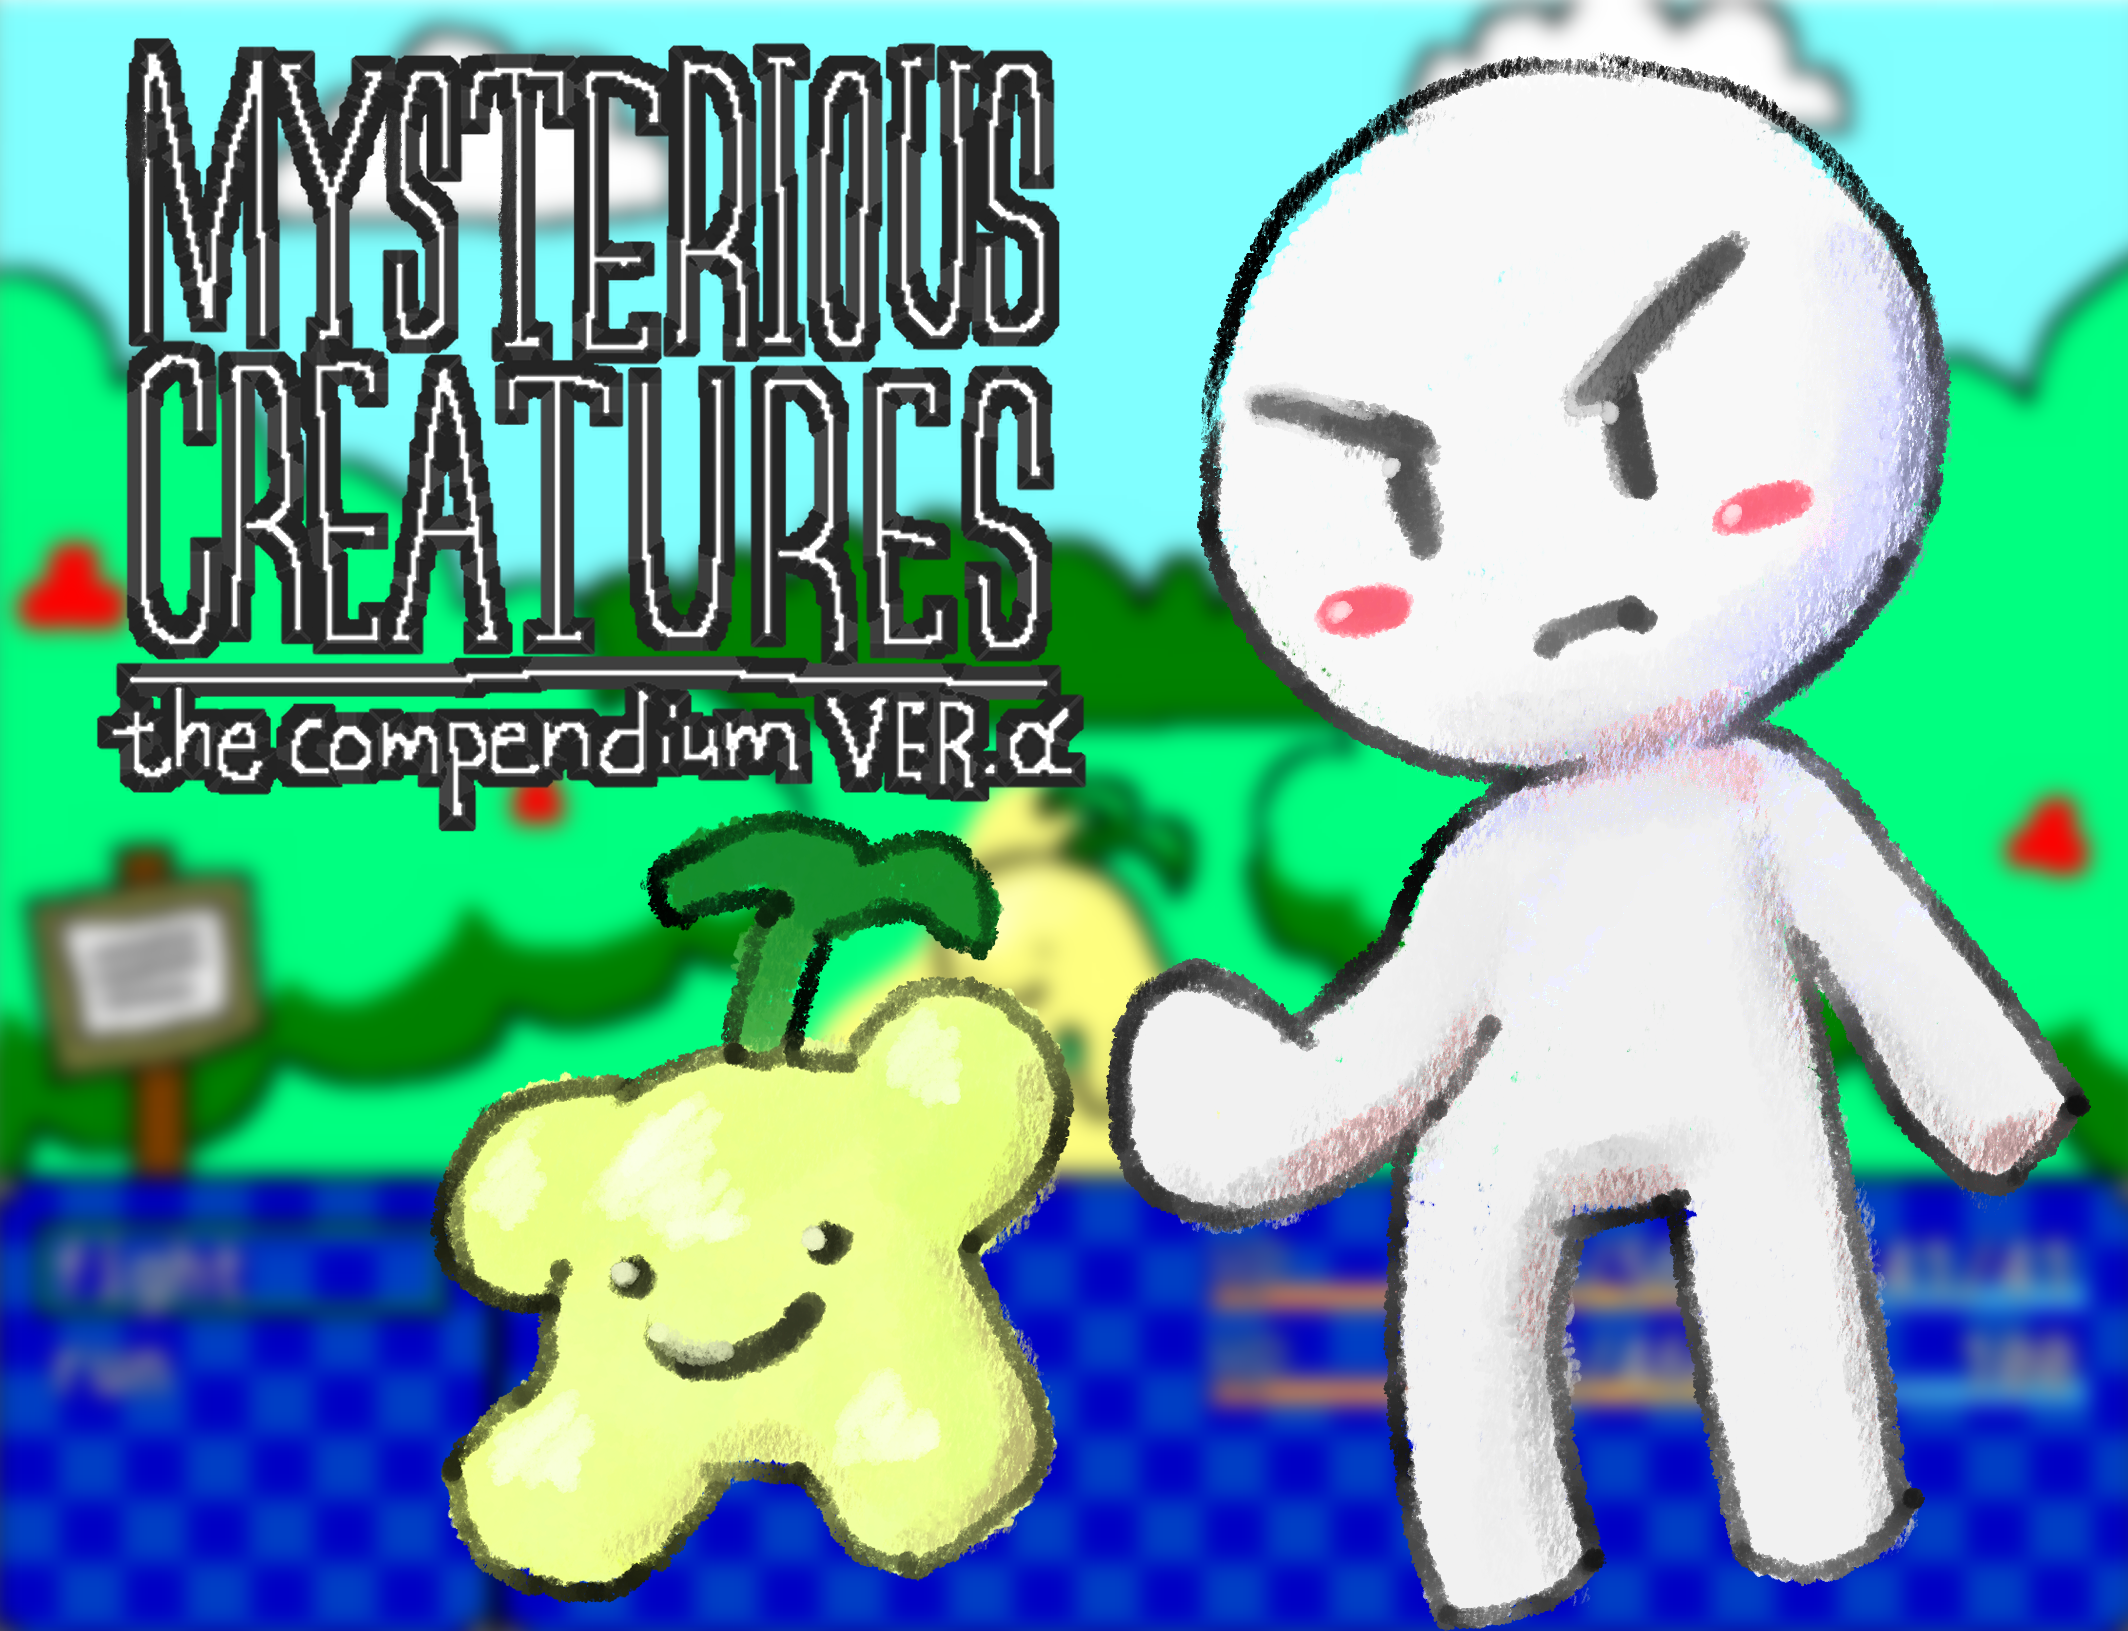 Mysterious Creatures The Compendium